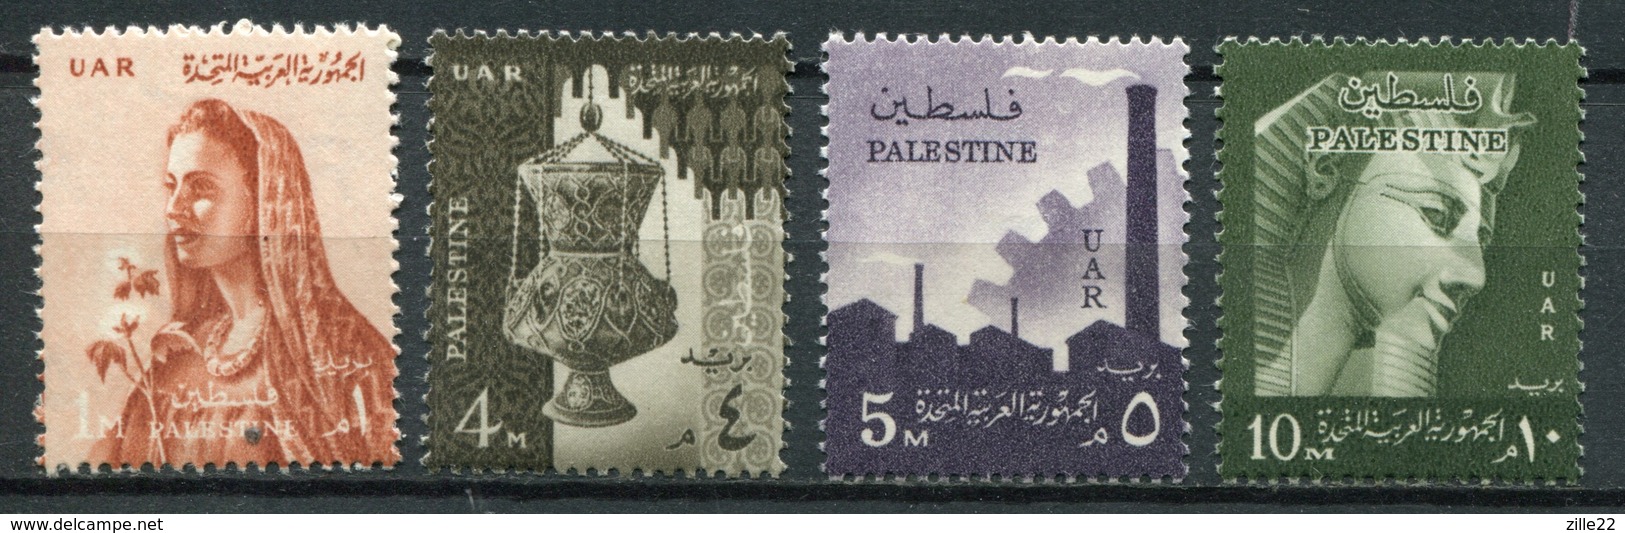 Palästina Palestine - Ägypten Besatzung Mi# 105-108 Postfrisch MNH - Palästina